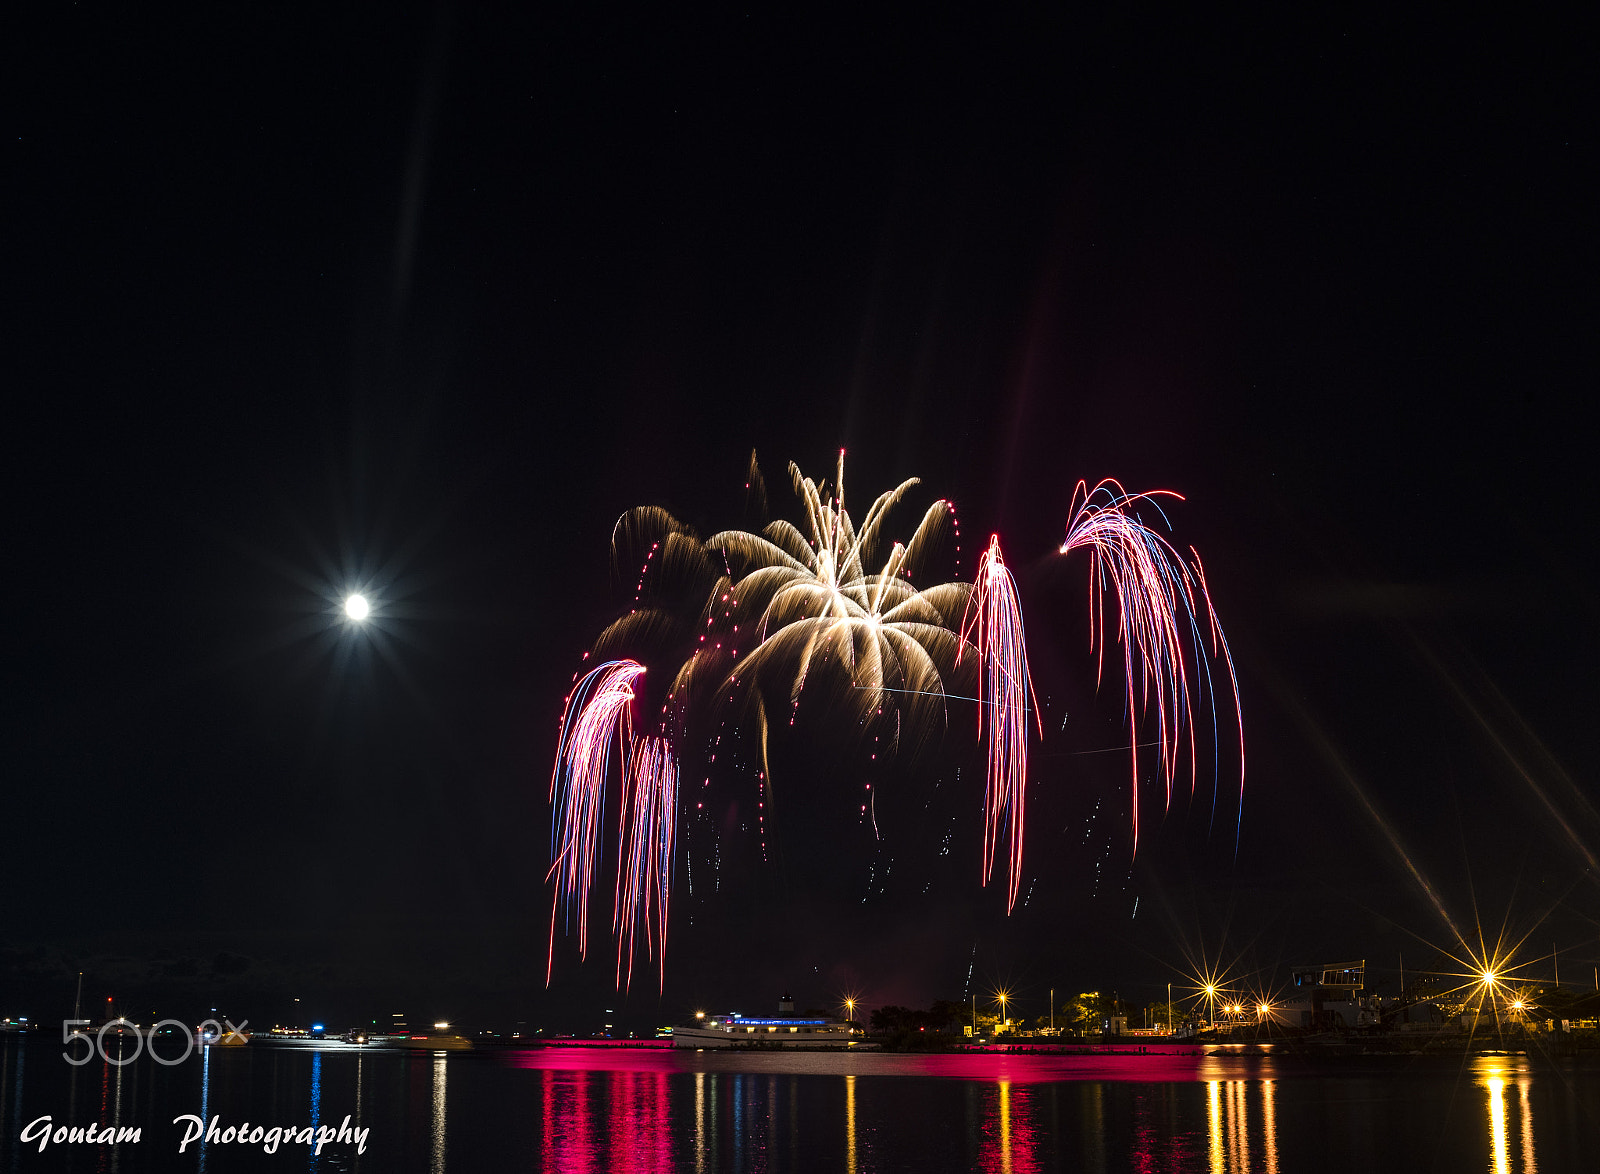 Nikon D750 + AF Zoom-Nikkor 35-70mm f/2.8D sample photo. Moonlight fireworks photography